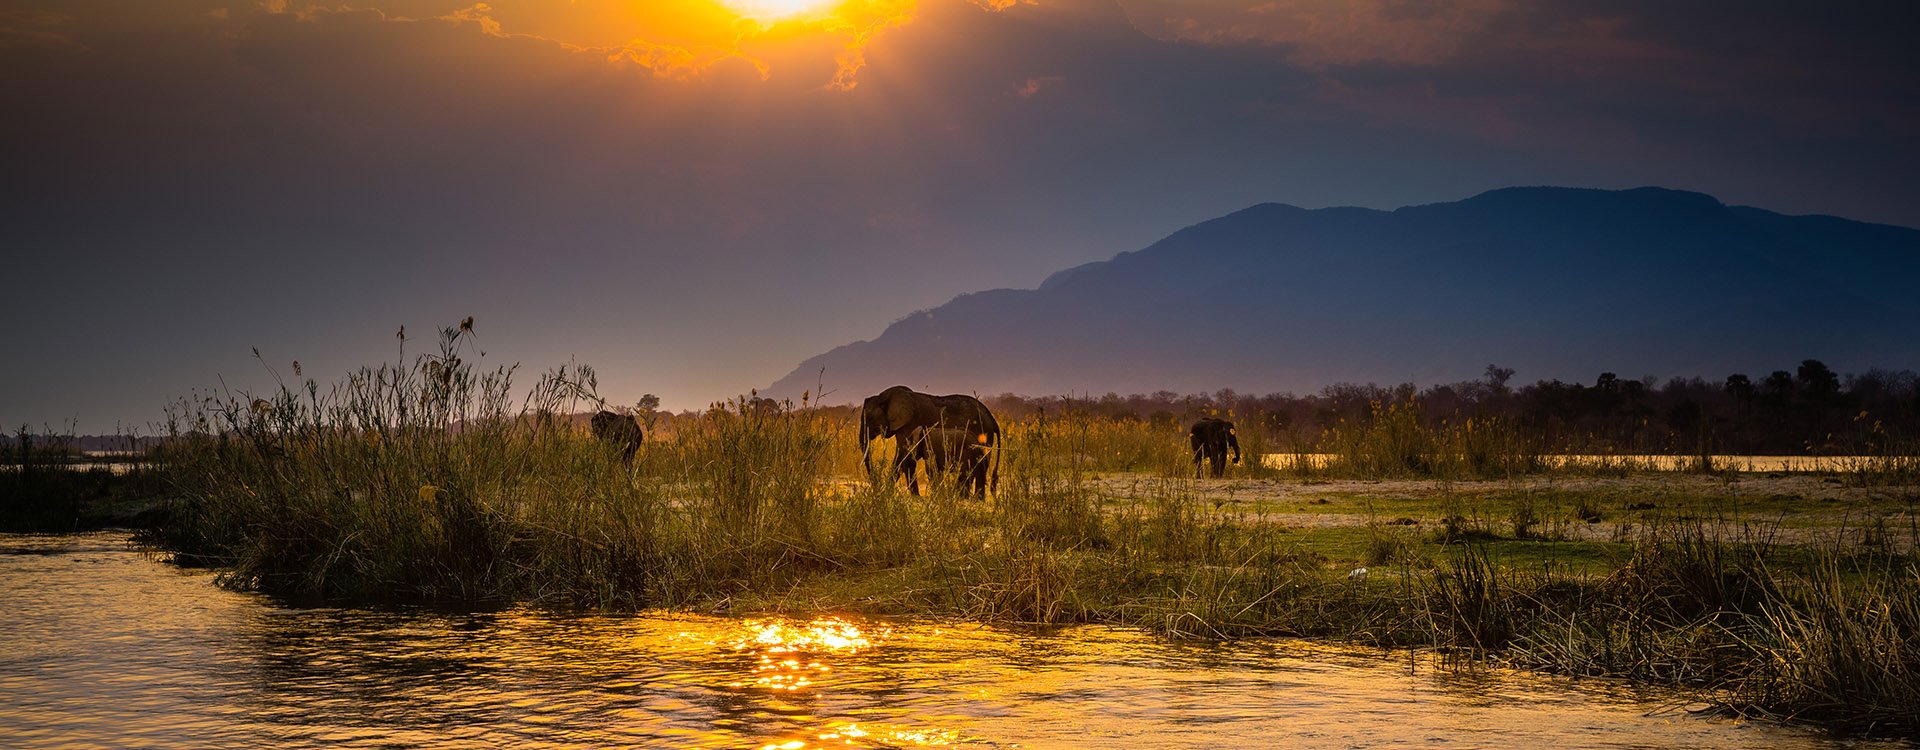 Lower Zambezi National Park. Zambezi River